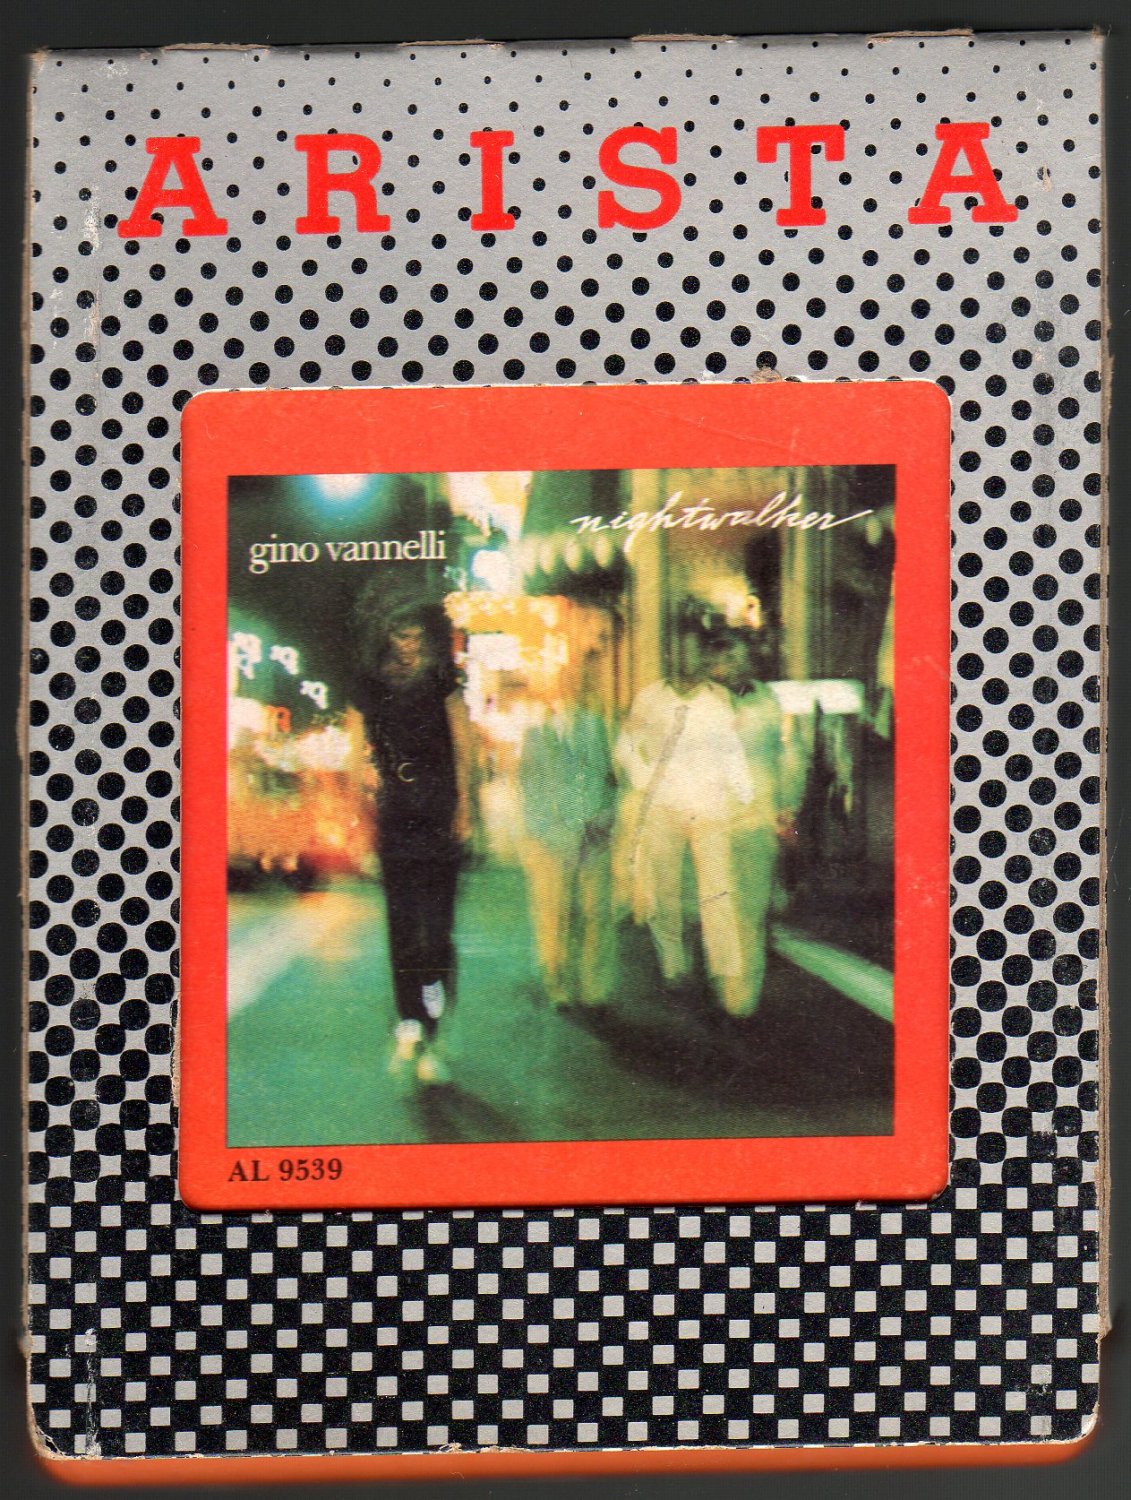 Gino Vannelli - Nightwalker 1981 ARISTA A28 8-TRACK TAPE